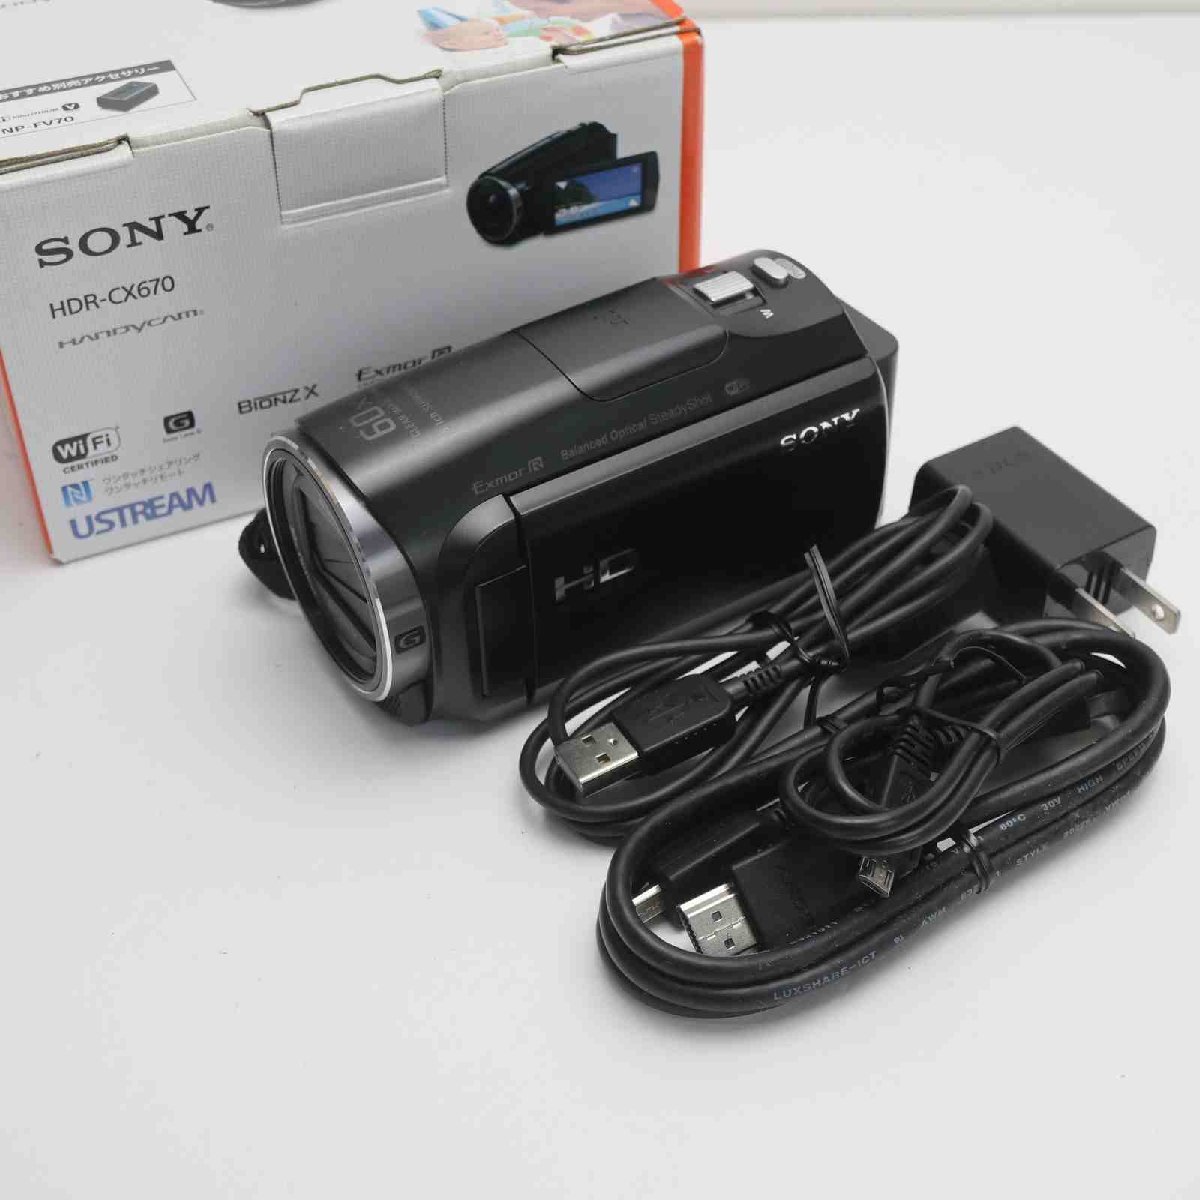 ブランド雑貨総合 SONY デジタルビデオカメラ 即日発送 ブラック HDR-CX670 超美品 本体 土日祝発送OK あすつく ソニー